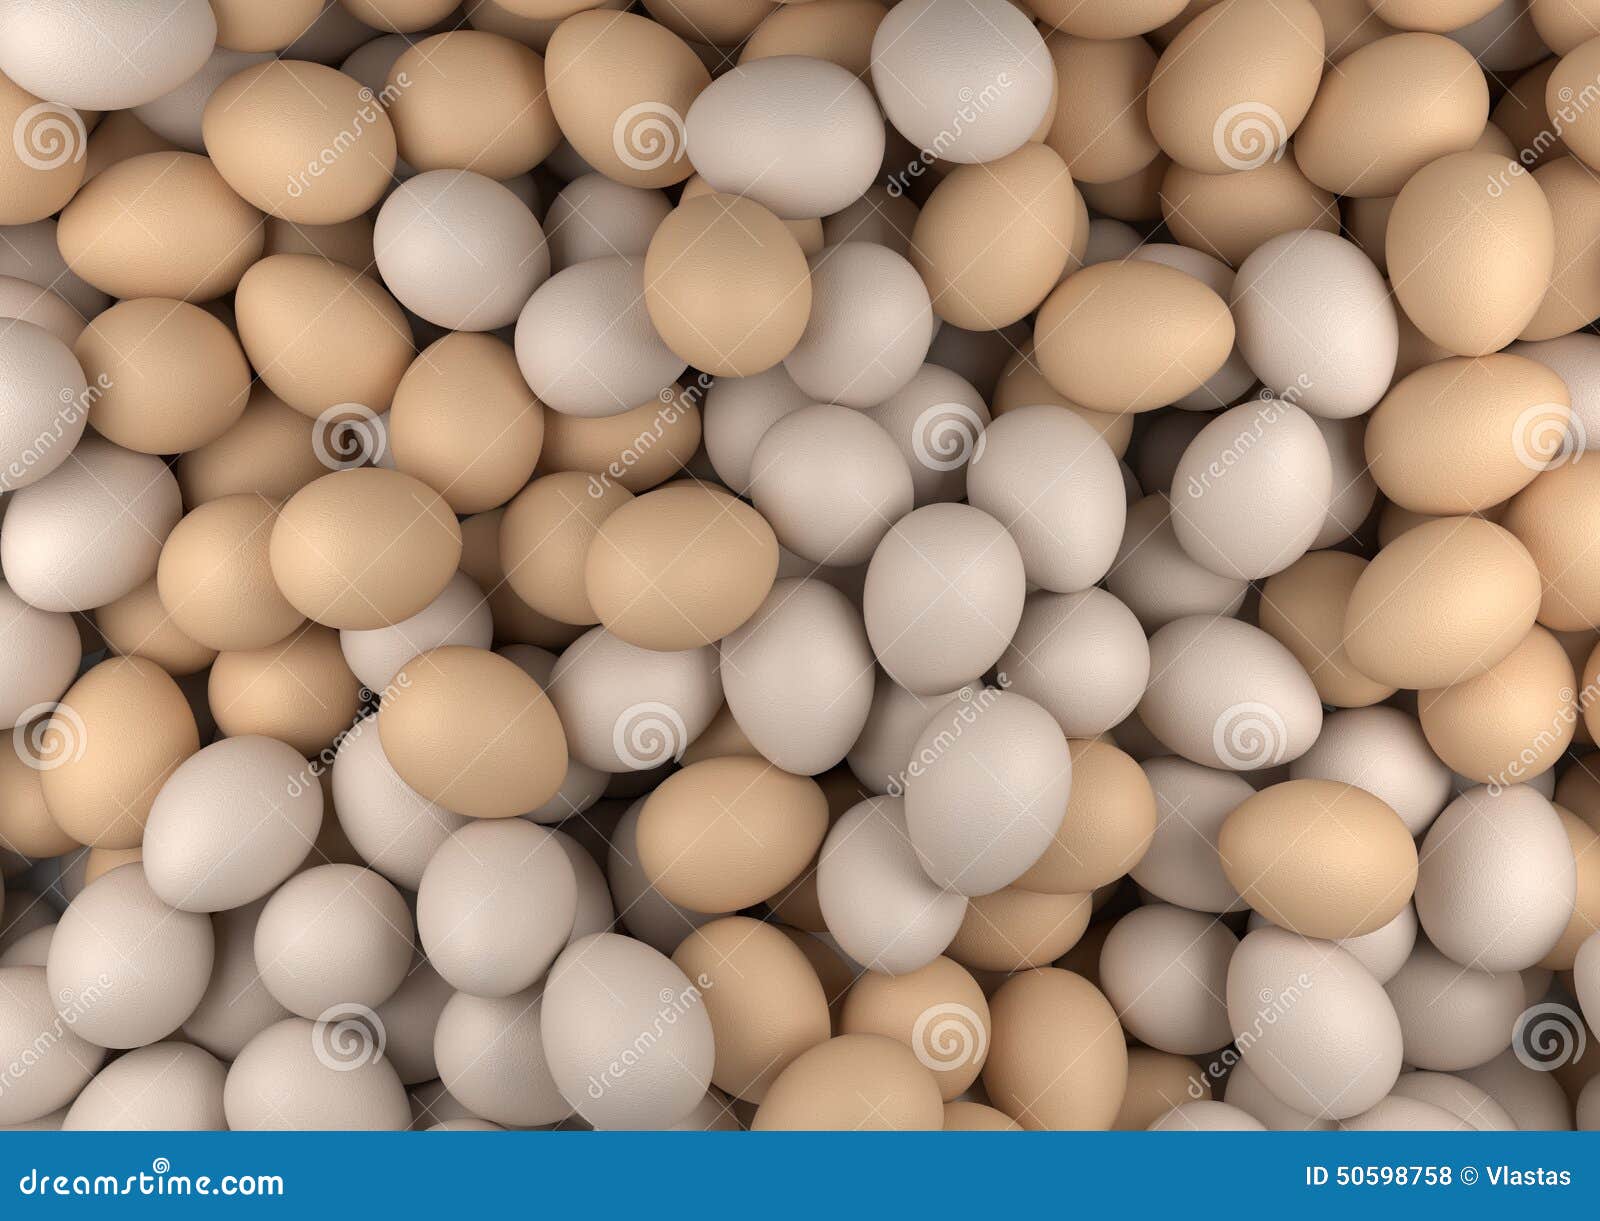 Много яиц. Много много яиц. Кучка яиц. Много яиц картинки.